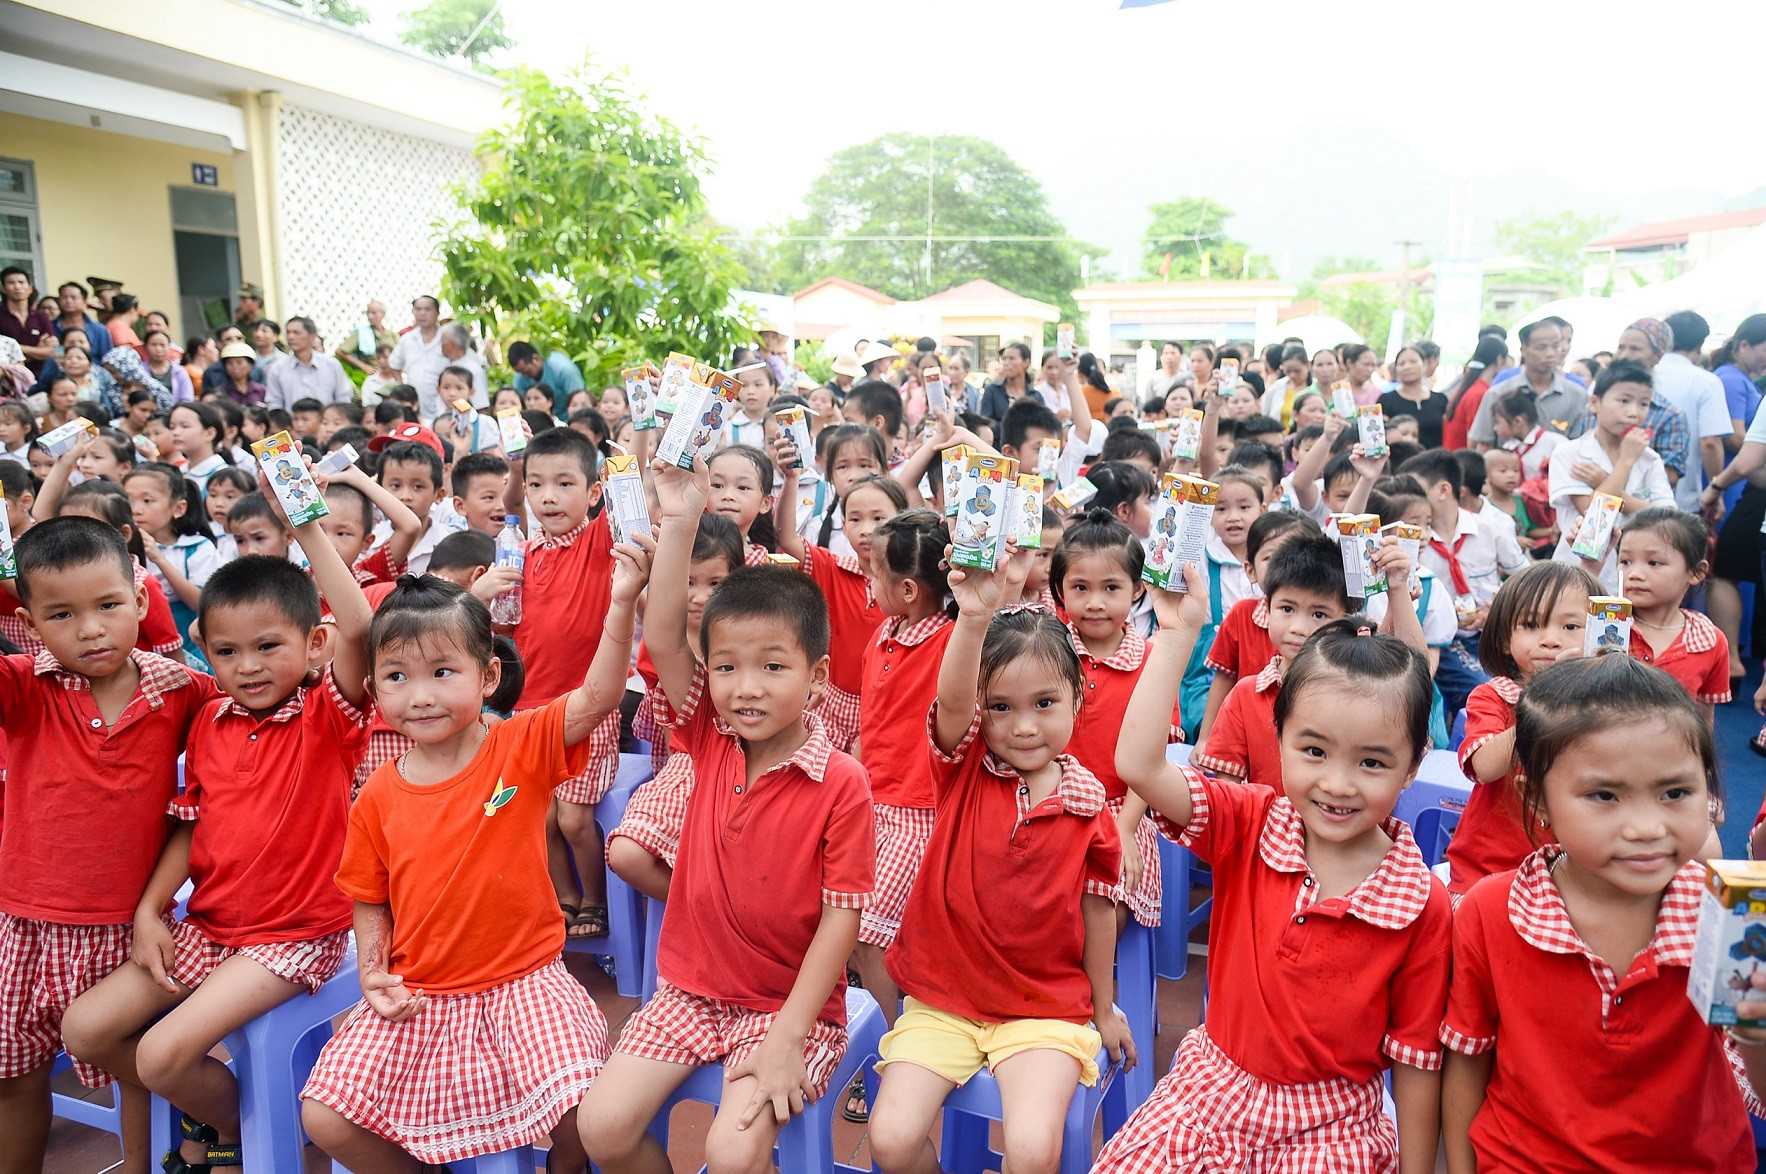 Quỹ sữa vươn cao Việt Nam và Vinamilk chung ta vì trẻ em Thái Nguyên.